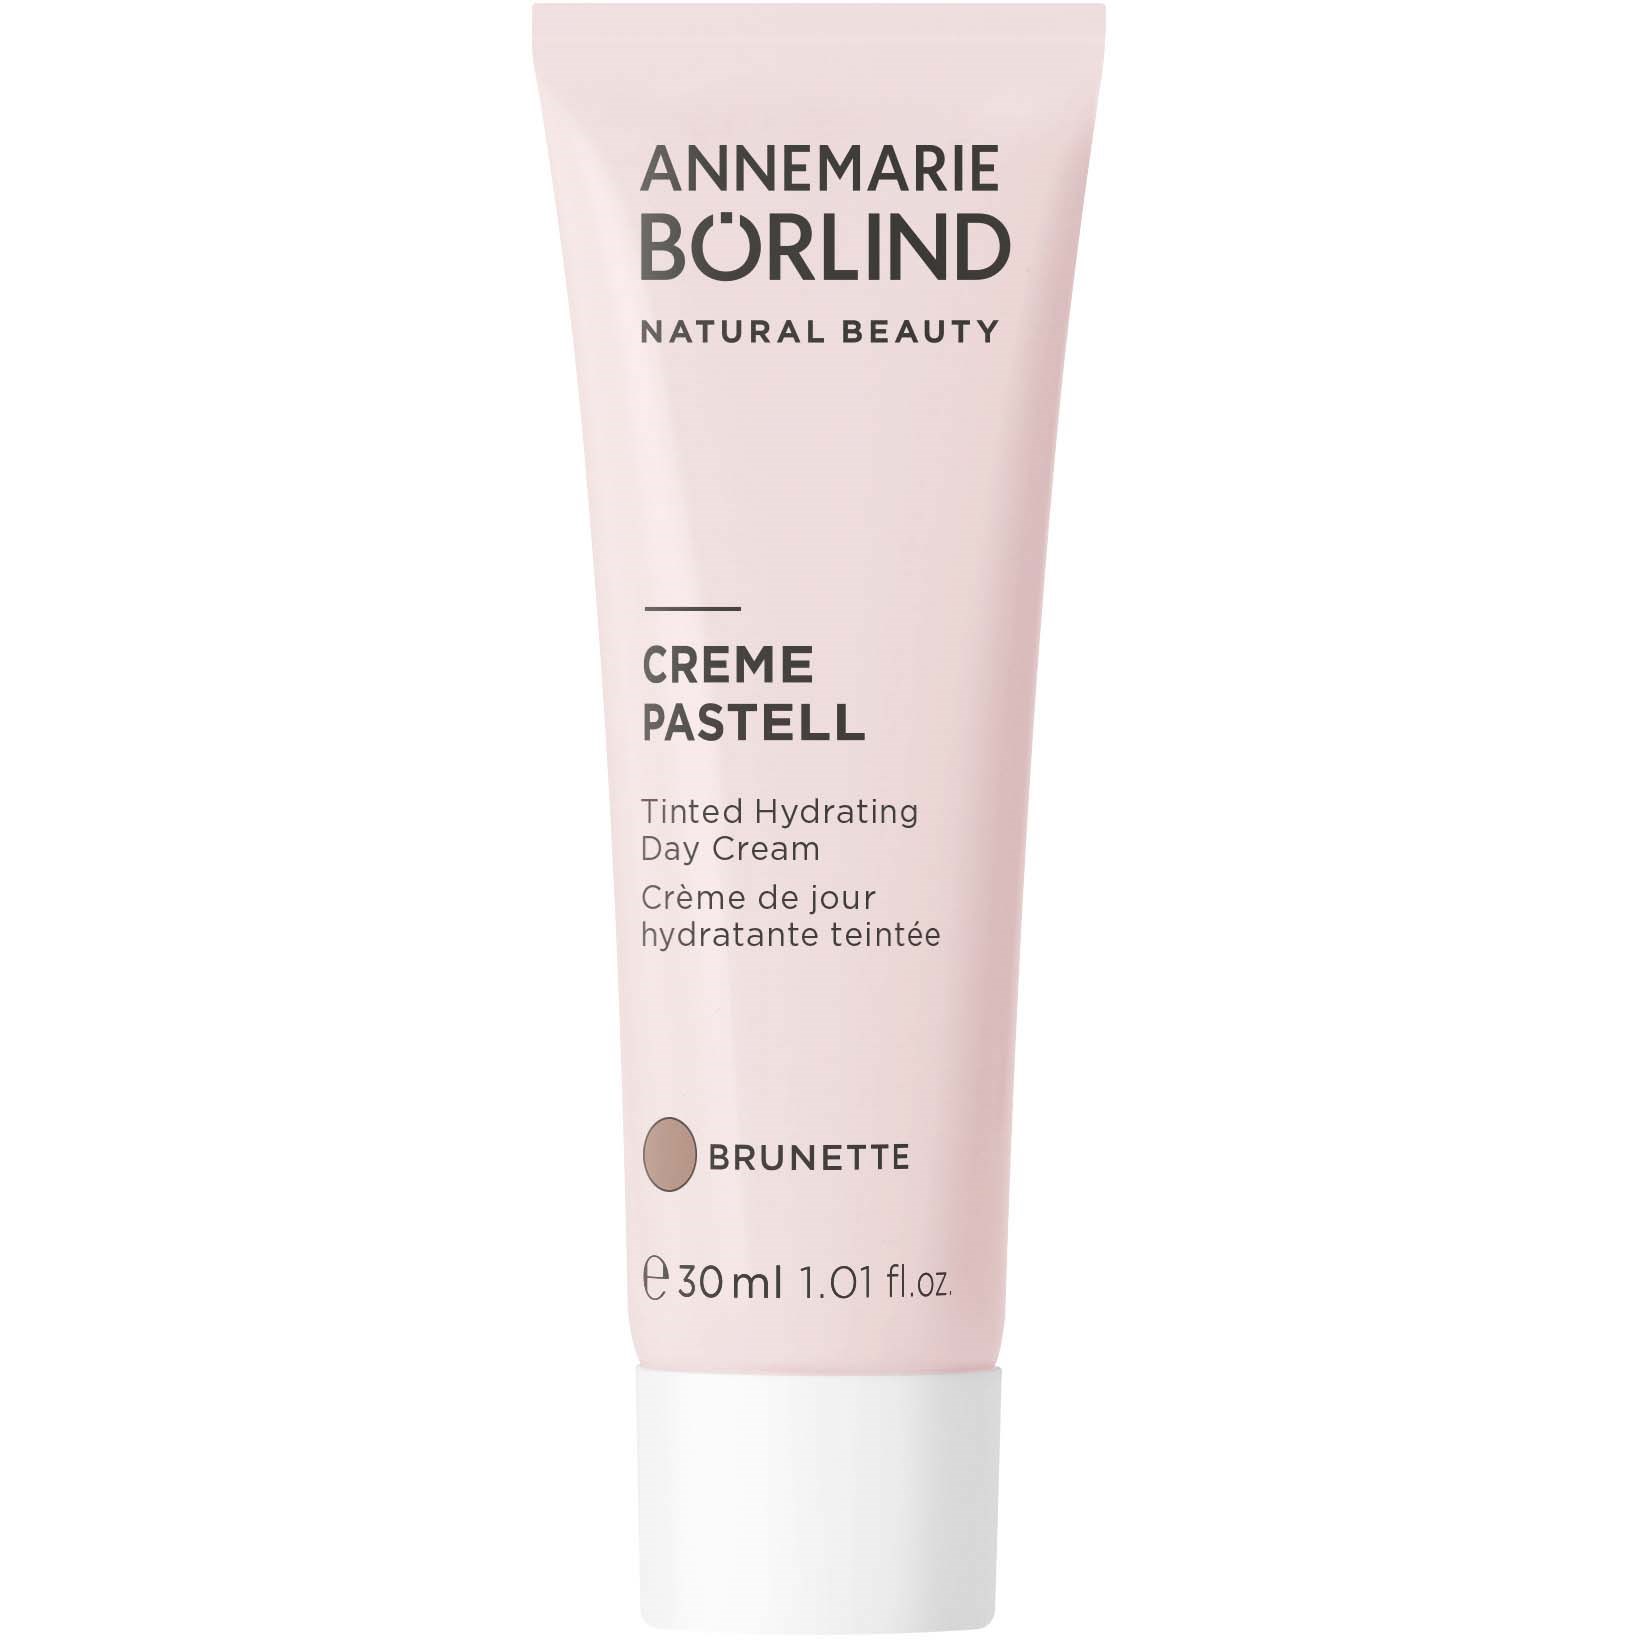 Annemarie Börlind Creme Pastell Day Cream Brunette